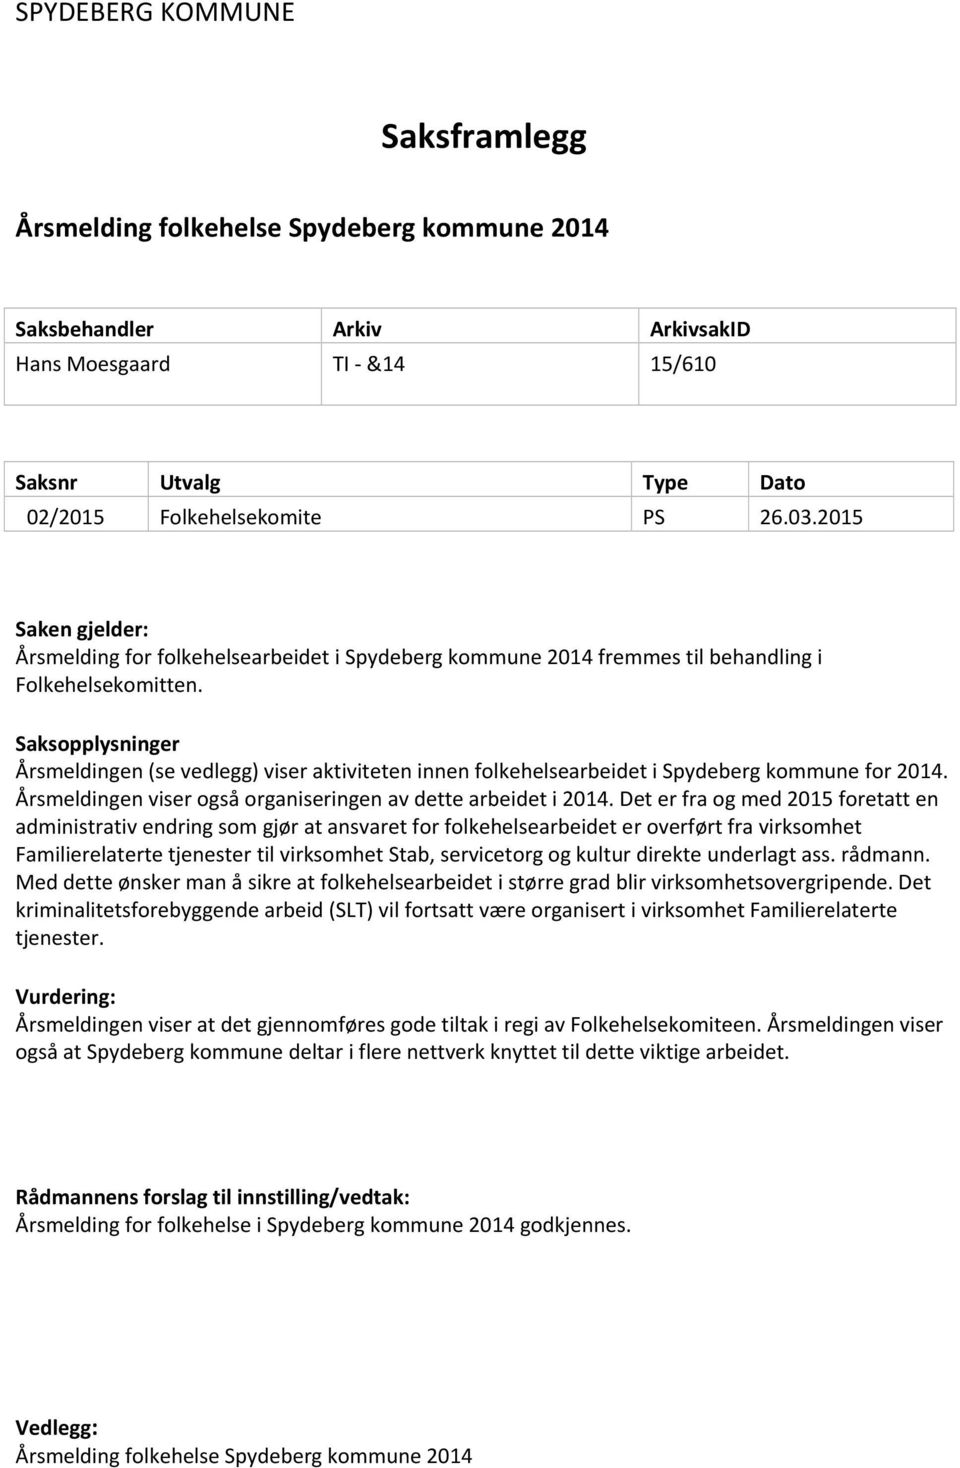 Saksopplysninger Årsmeldingen (se vedlegg) viser aktiviteten innen folkehelsearbeidet i Spydeberg kommune for 2014. Årsmeldingen viser også organiseringen av dette arbeidet i 2014.